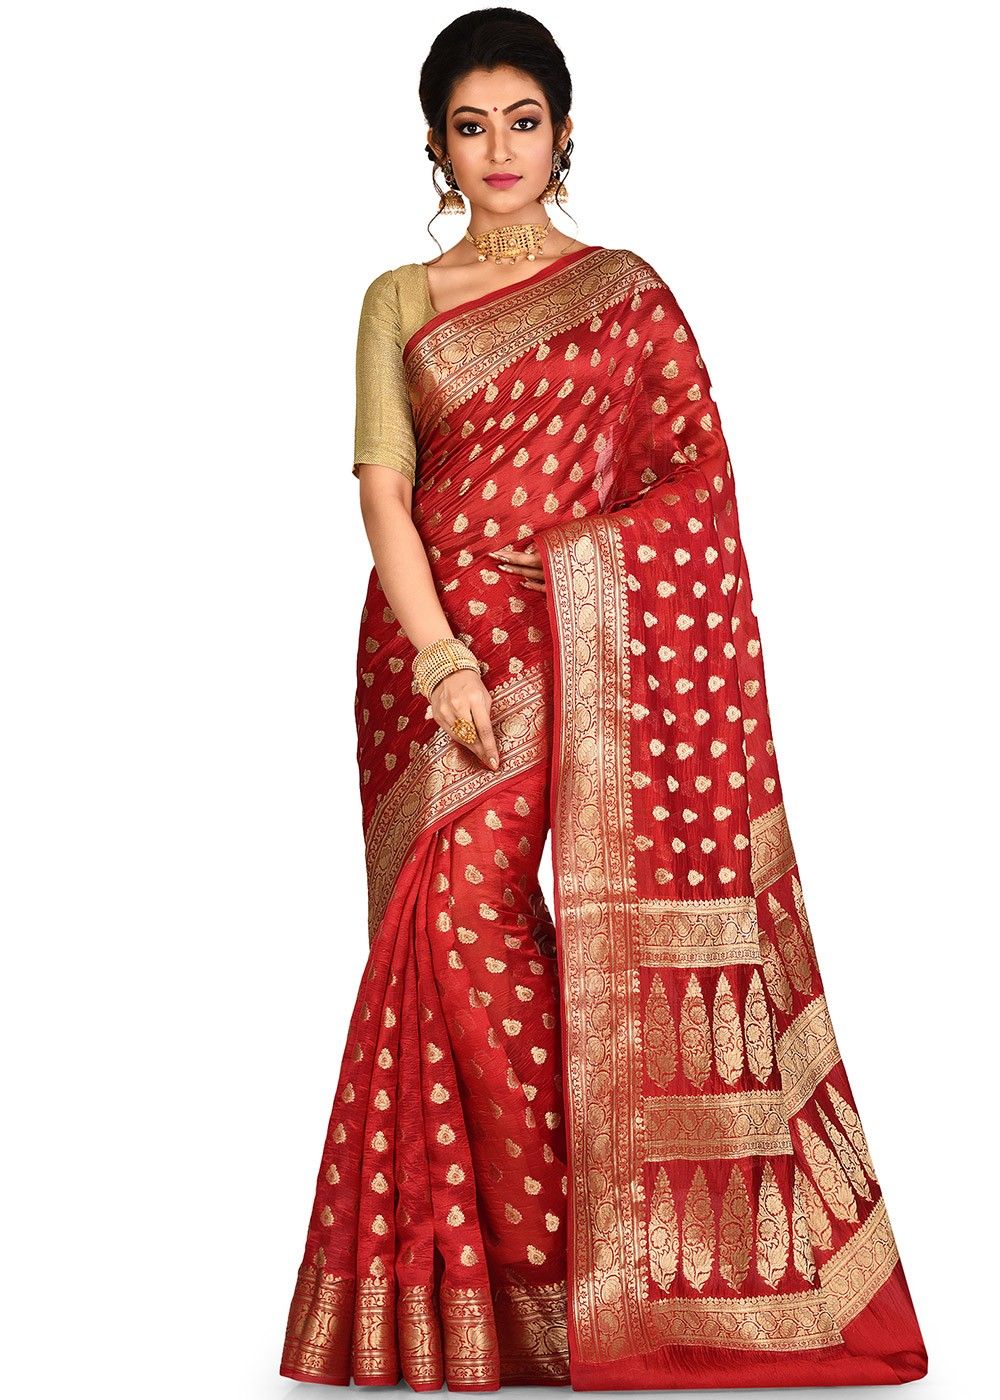 Malati' Red Pure Katan Silk Banarasi Handloom Saree - Tilfi